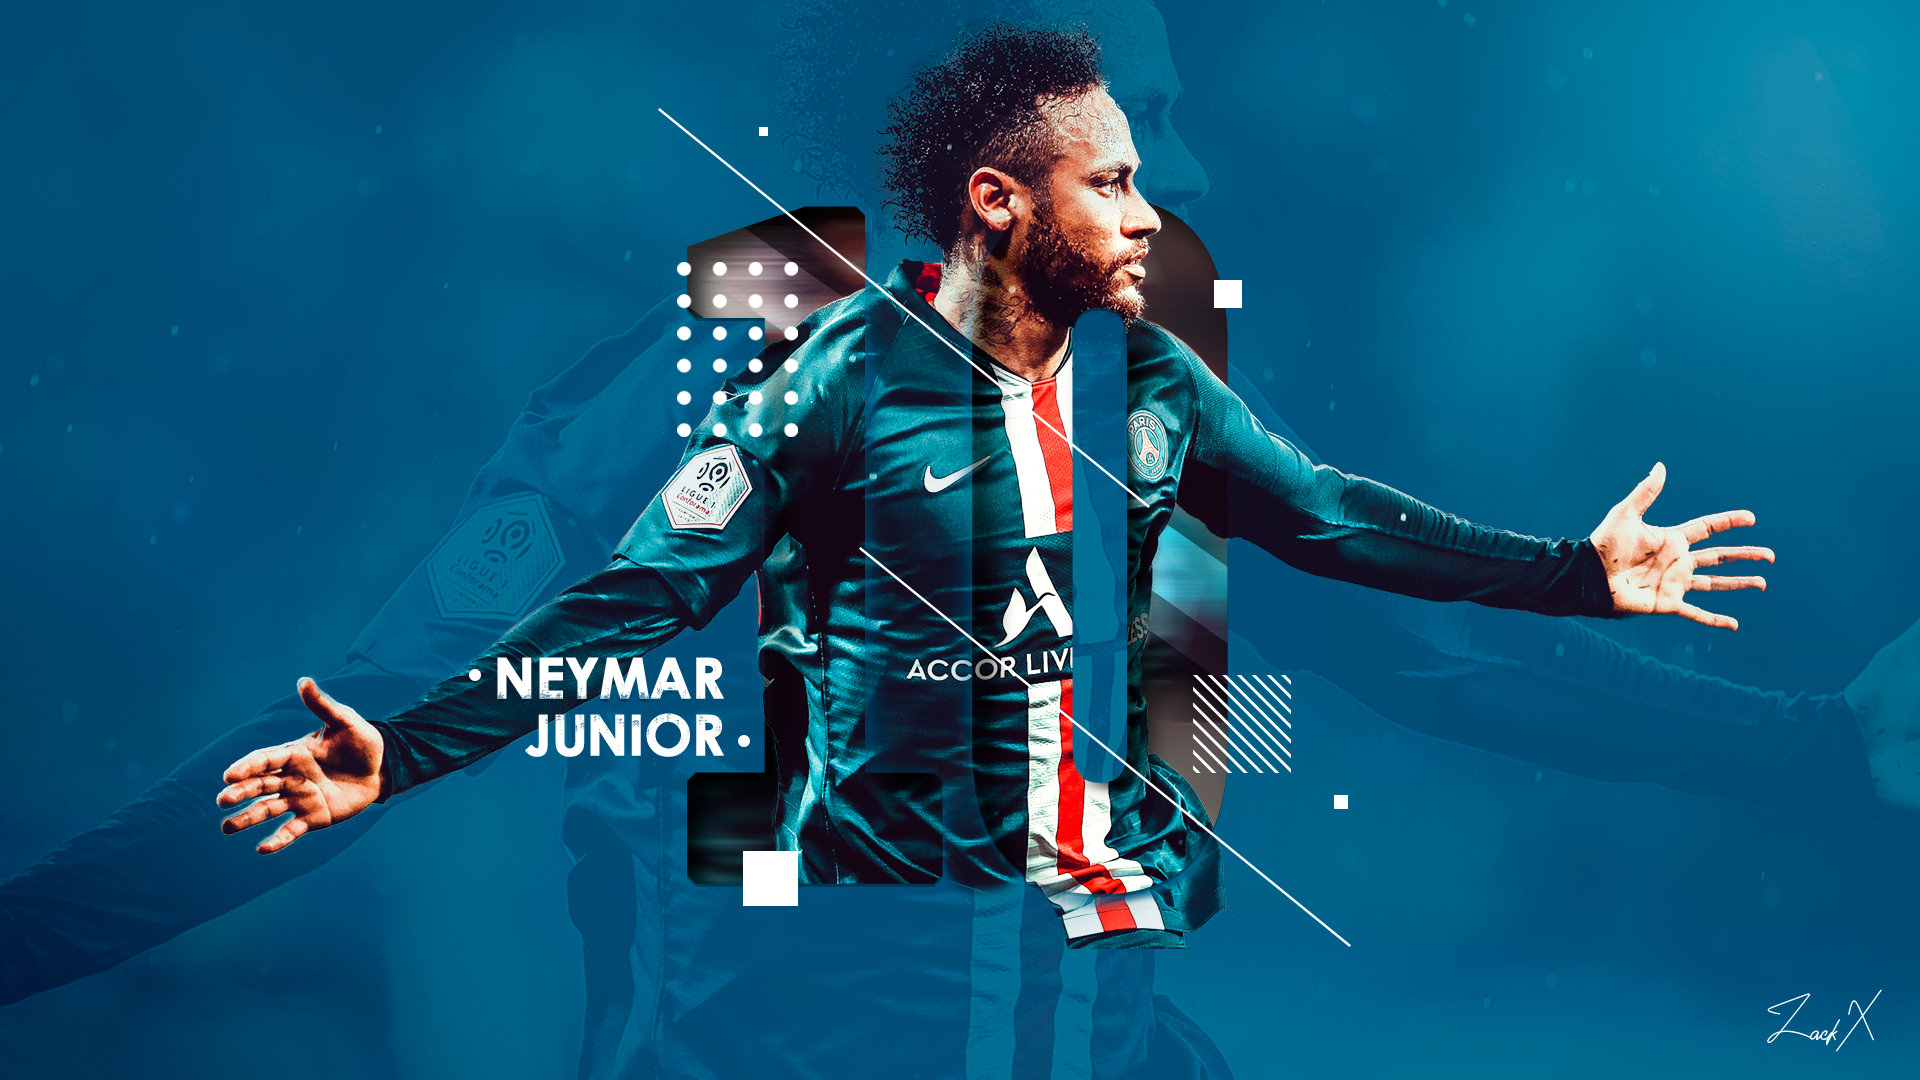 Những bức hình nền Neymar Jr. PC được thiết kế cho độ phân giải cao nhất, giúp bạn cảm nhận sự sống động và phong phú trong từng chi tiết thành phẩm. Hãy cập nhật ngay để tận hưởng vẻ đẹp đó!